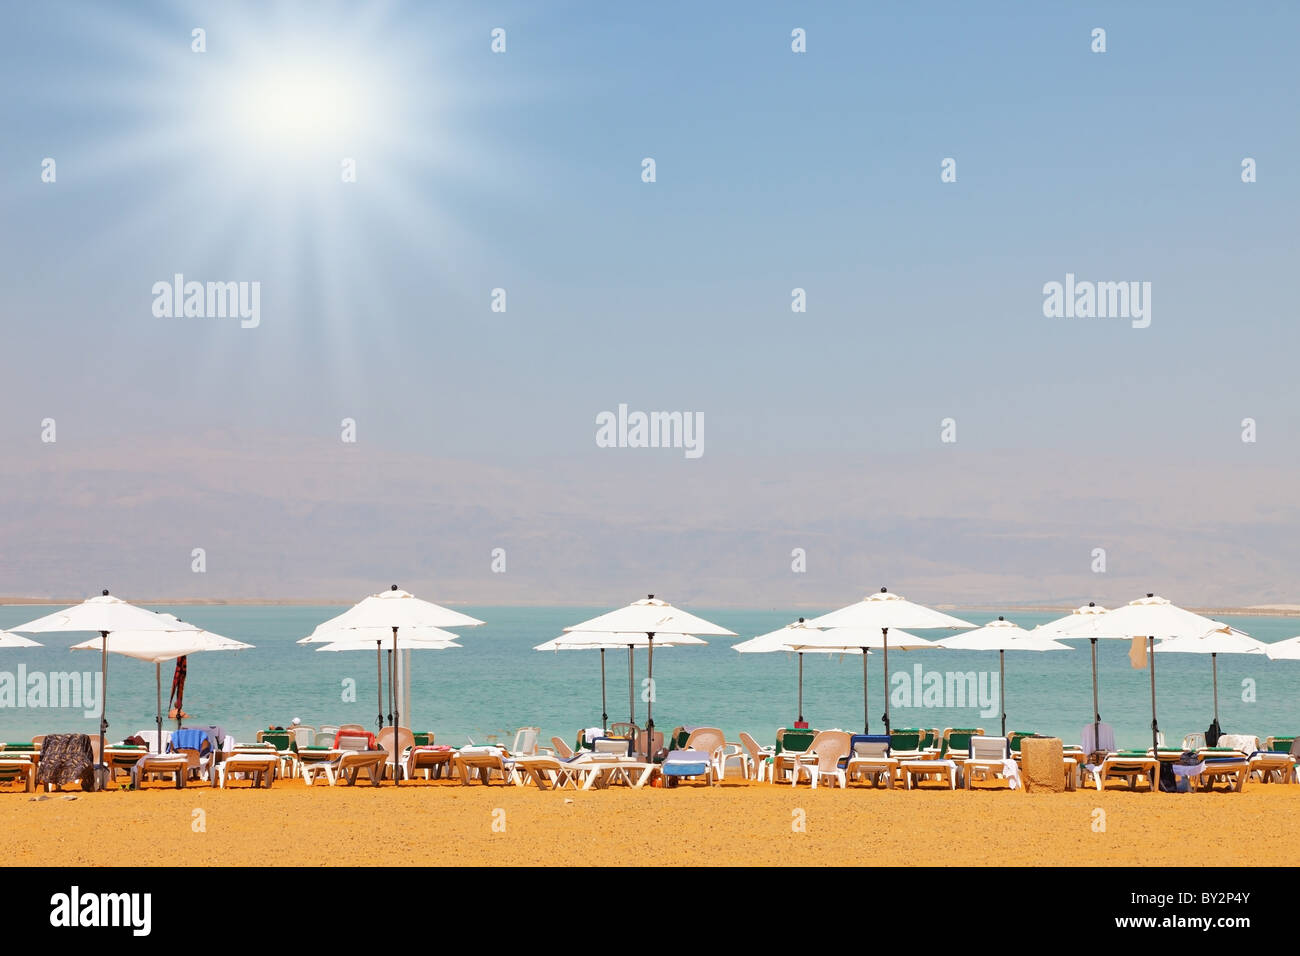 Transats, chaises longues, des parasols et des auvents sur la plage hôtel de luxe sur la mer Morte en Israël. Jour de printemps Ensoleillé Banque D'Images